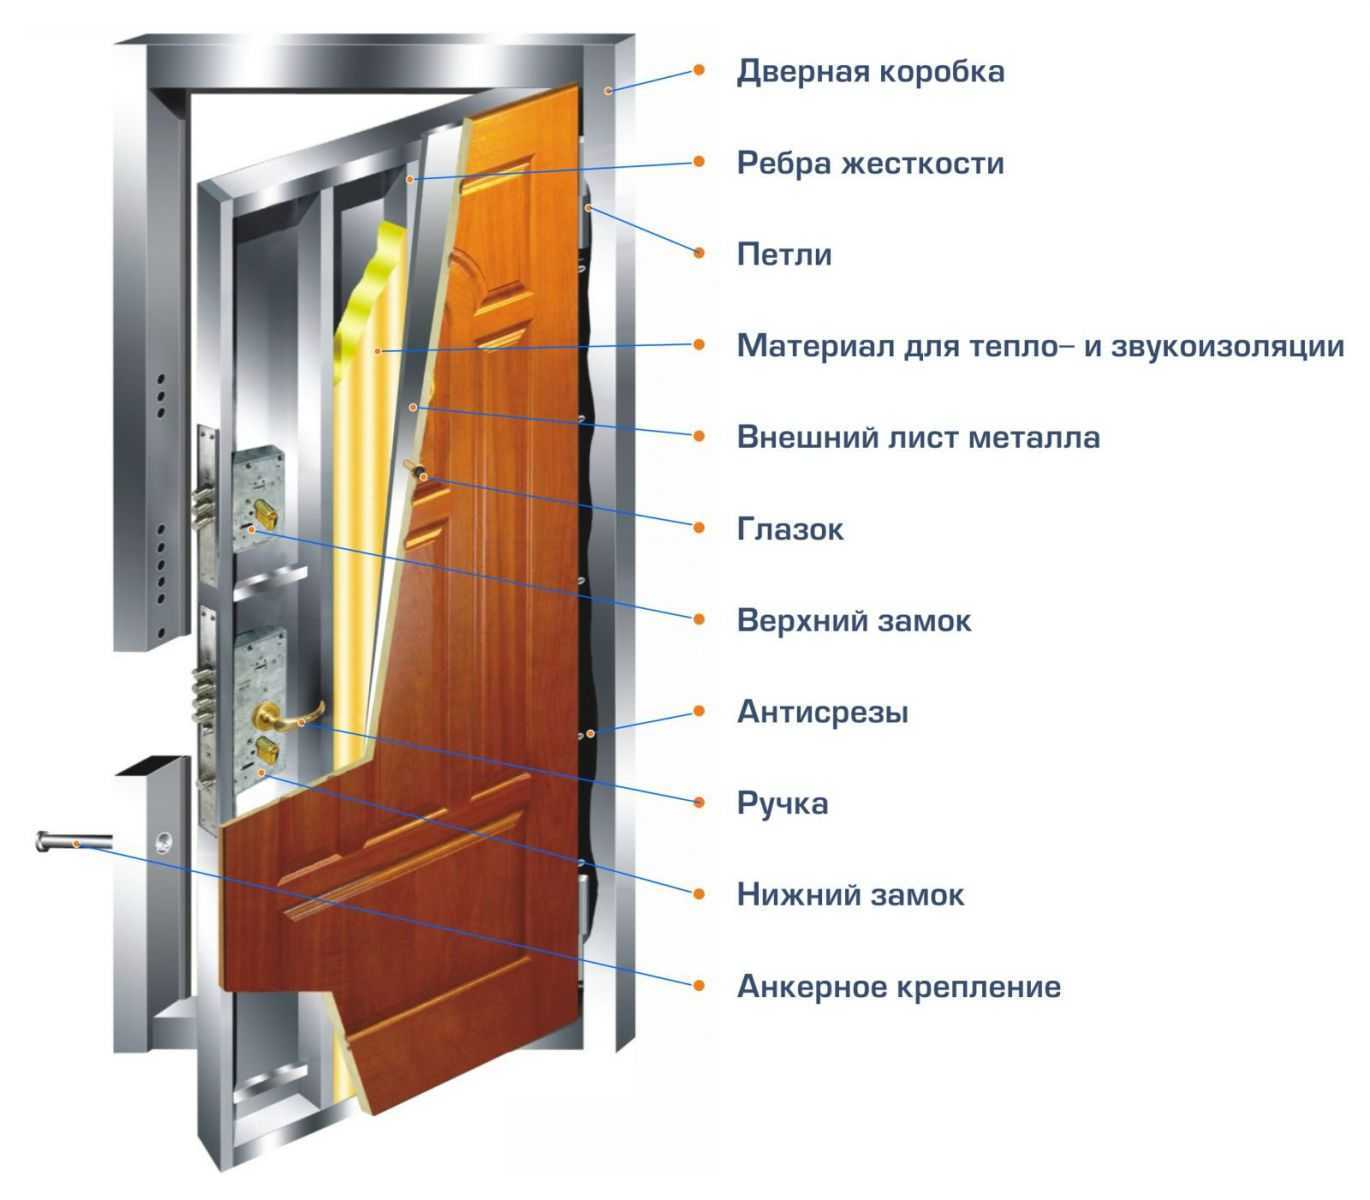 Основные элементы межкомнатной двери, фурнитура межкомнатных дверей